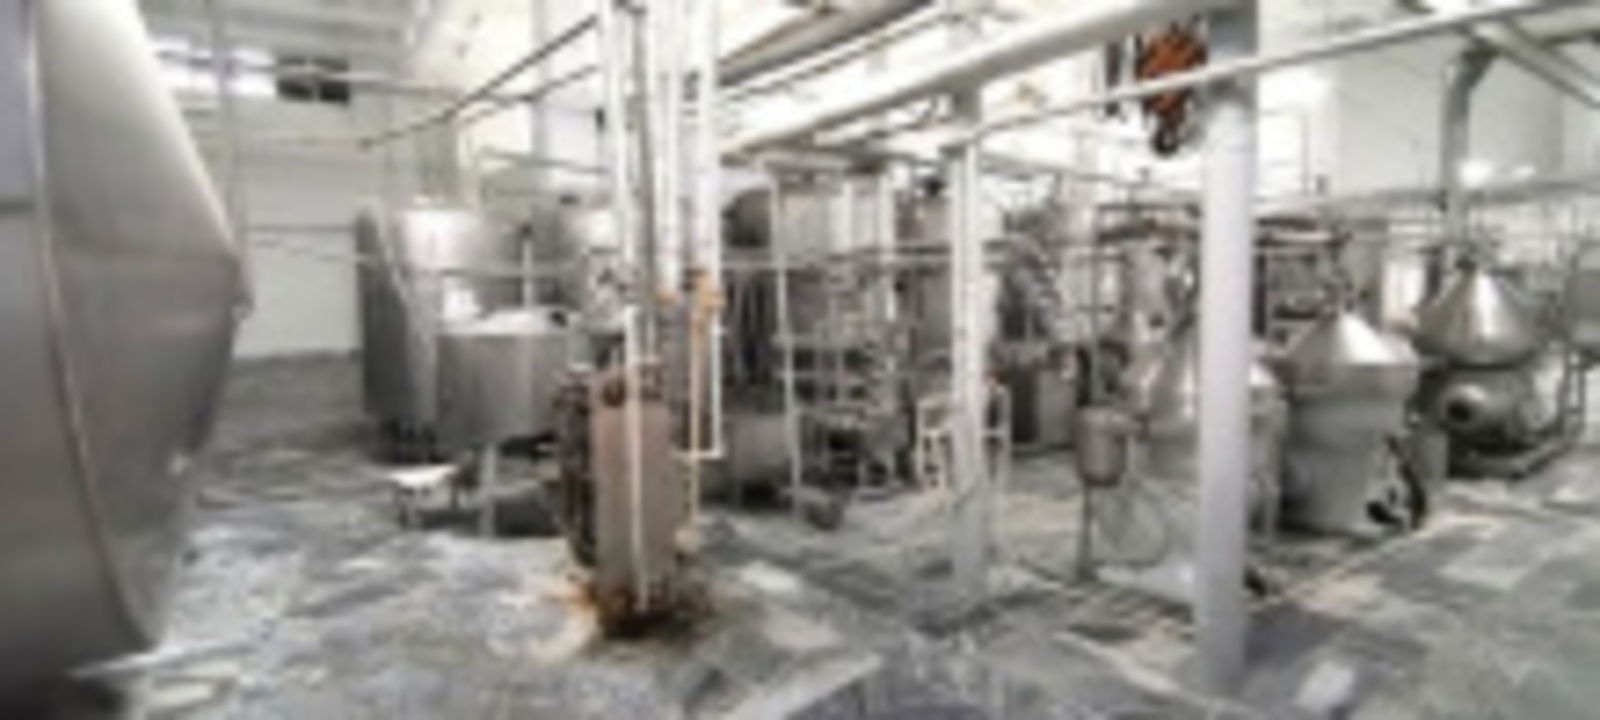 Бережливое производство дало молочноконсервному комбинату в Башкортостане экономический эффект в 26,7 млн рублей